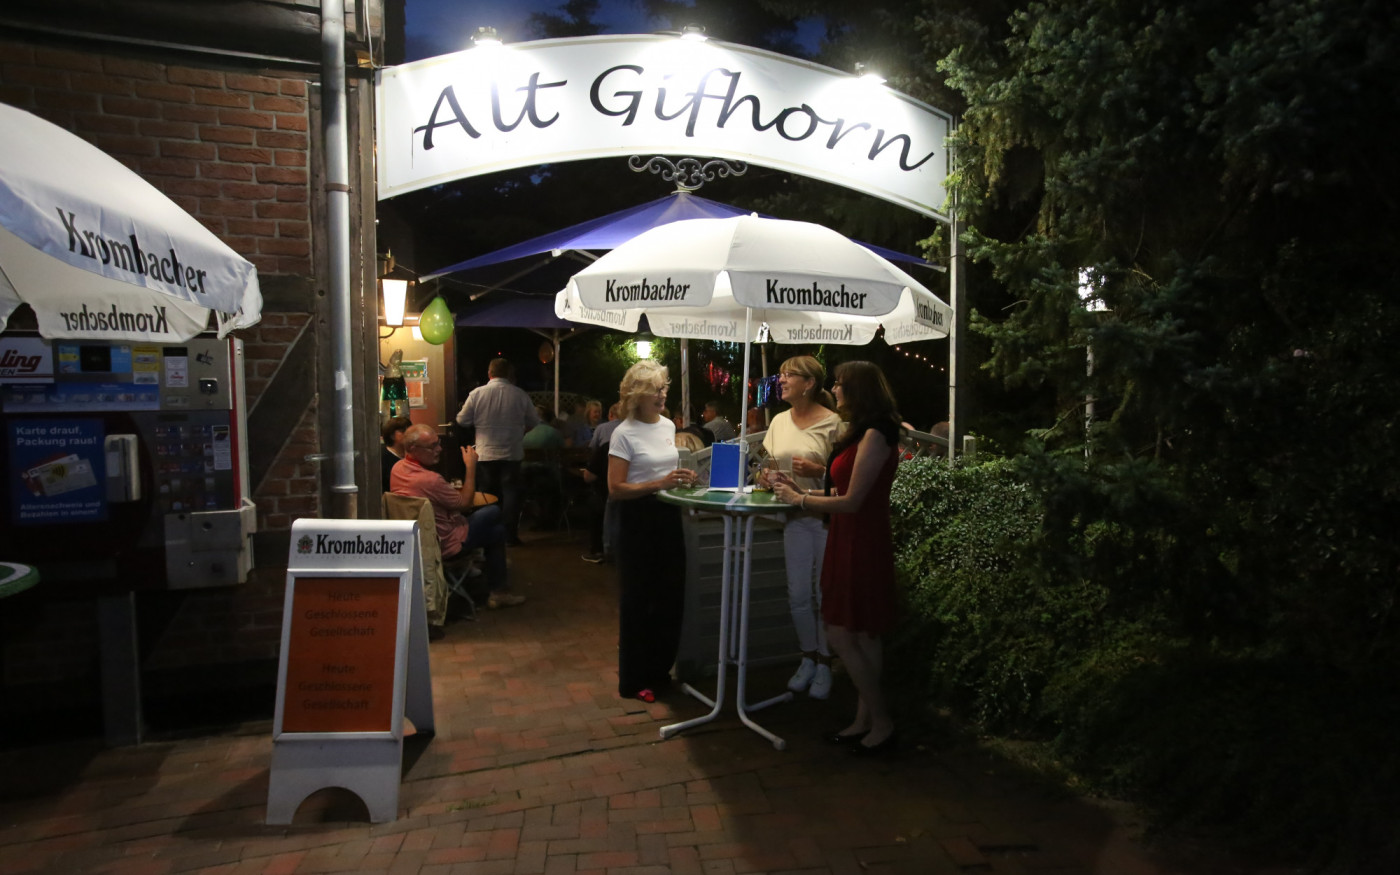 Gemütliche Atmosphäre für größere Feste - Das Alt Gifhorn stellt sich für private Festlichkeiten als Party-Ort zur Verfügung